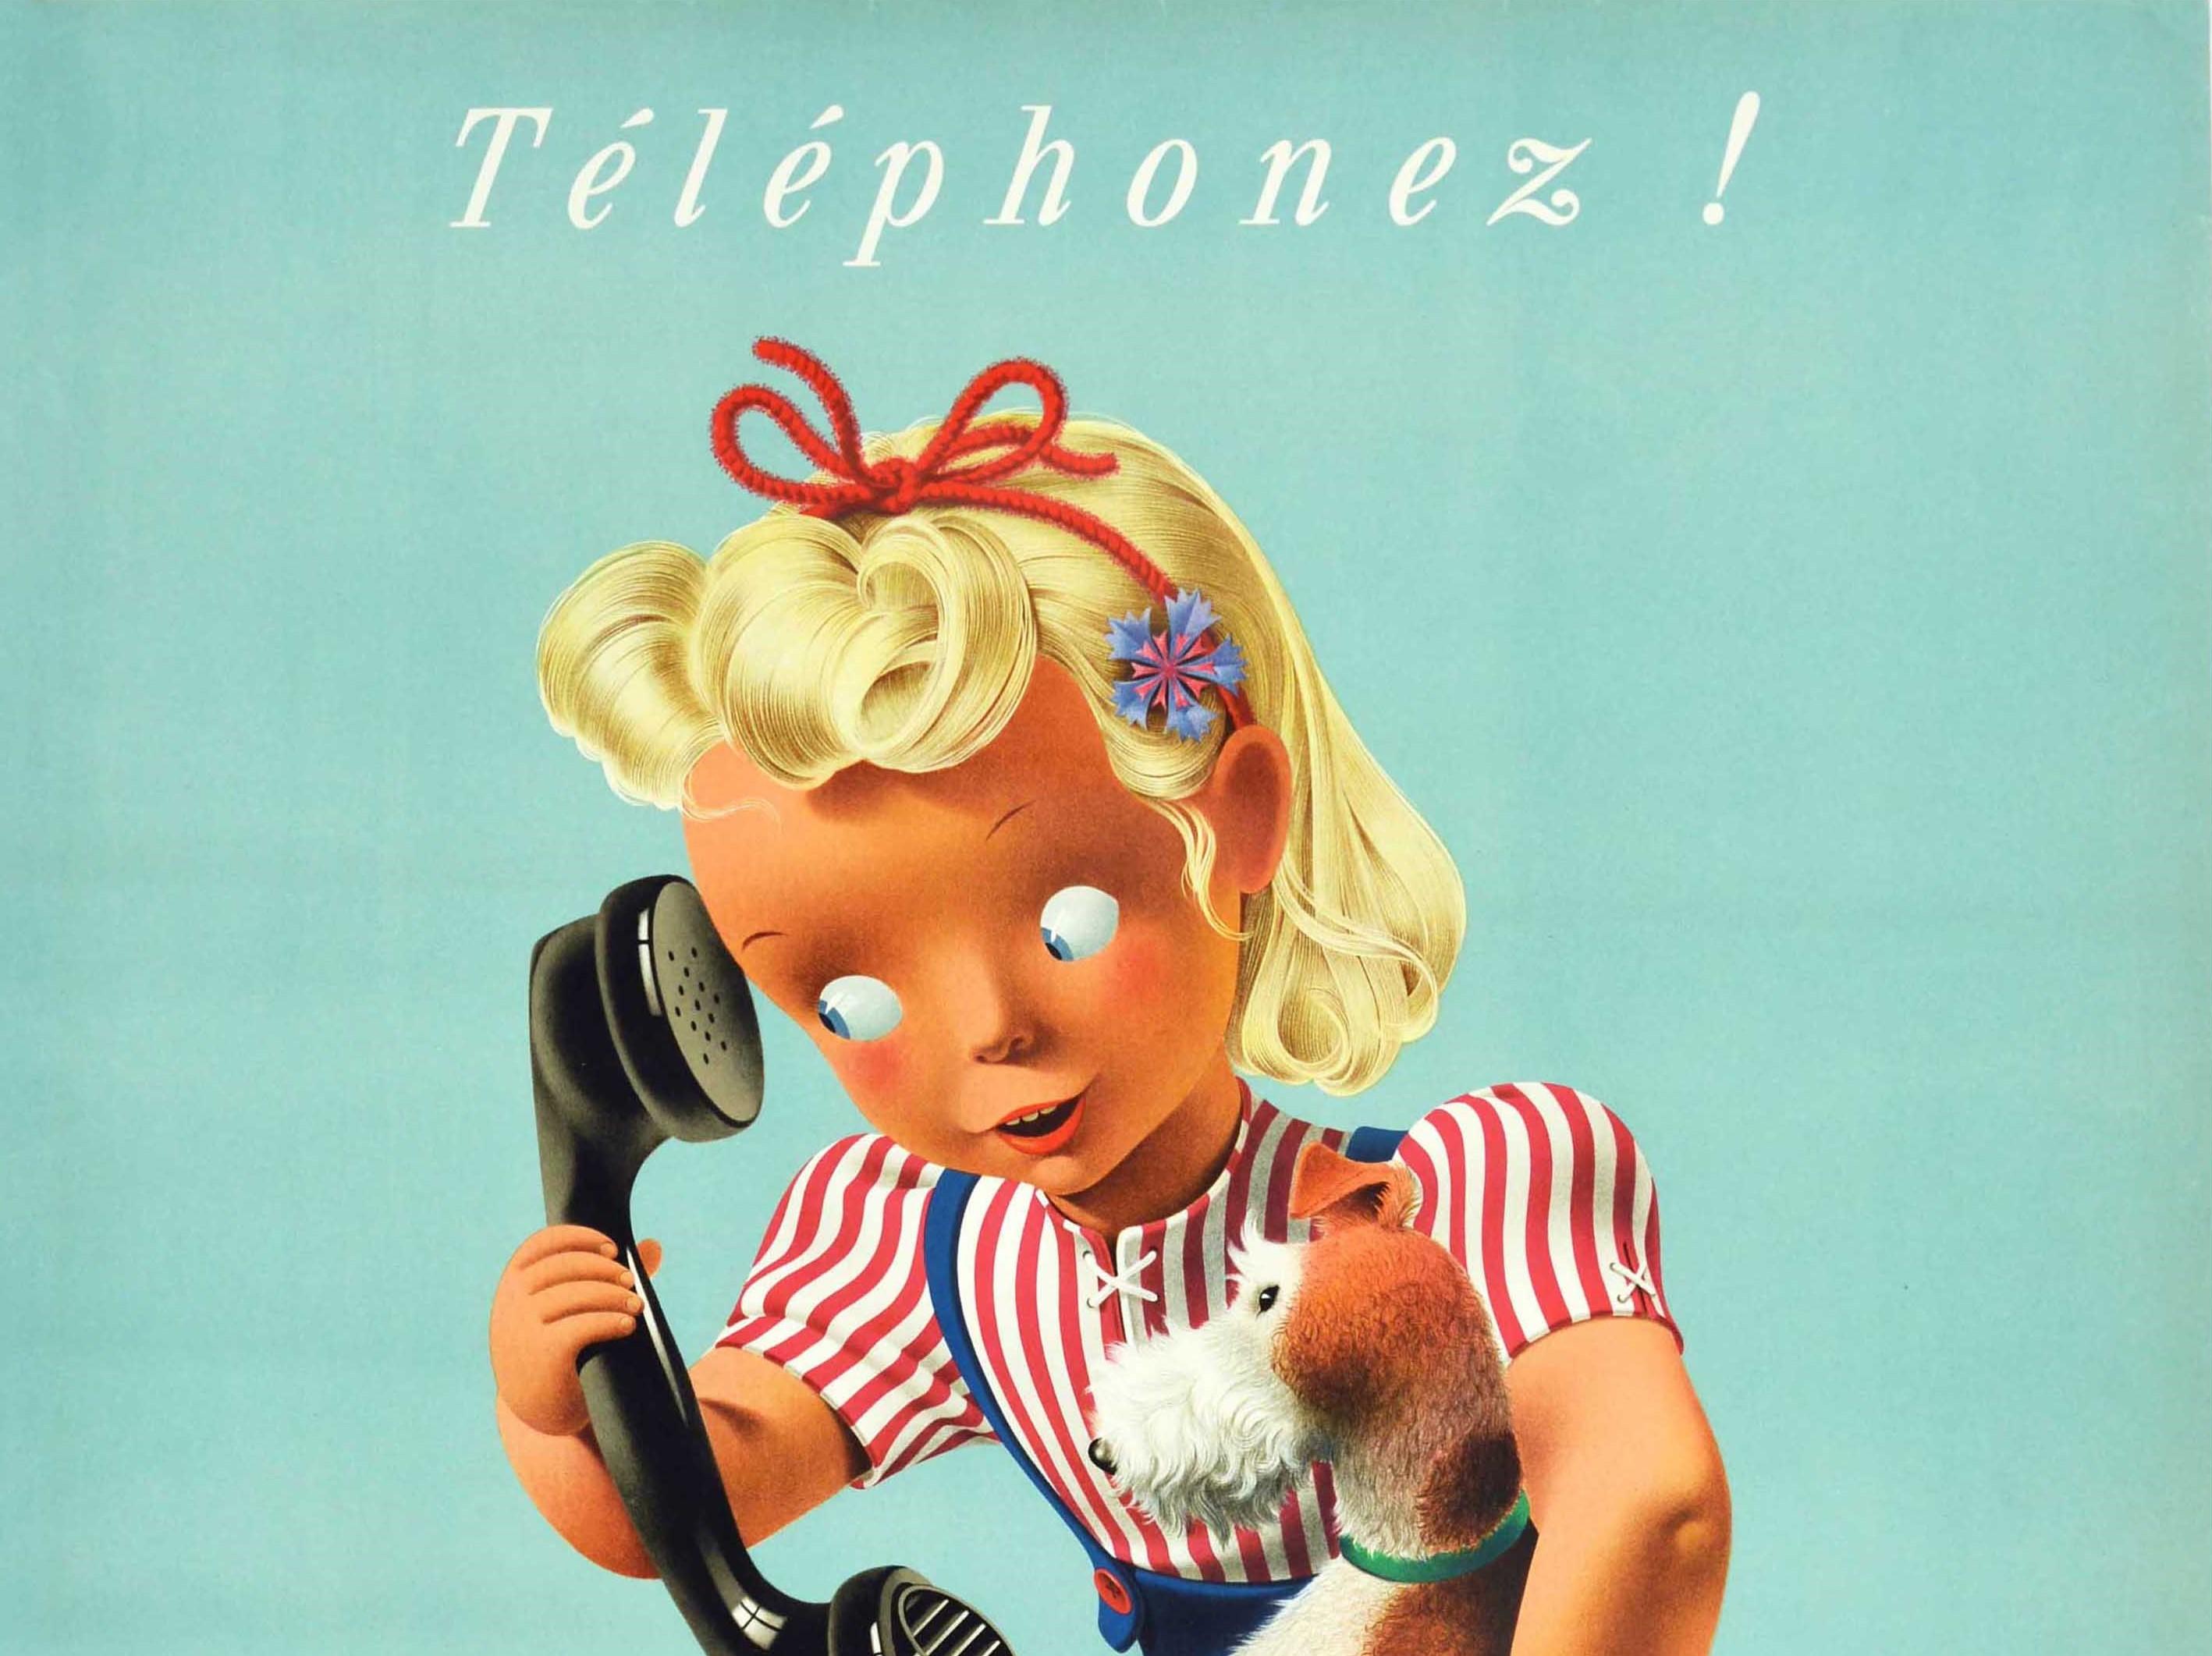 Affiche publicitaire originale vintage pour Swiss Telecom - Telephonez! - présentant une adorable illustration de Donald Brun (1909-1999) représentant une jeune fille dans une chemise rayée rouge et blanche et des bouffons bleus avec une corde rouge